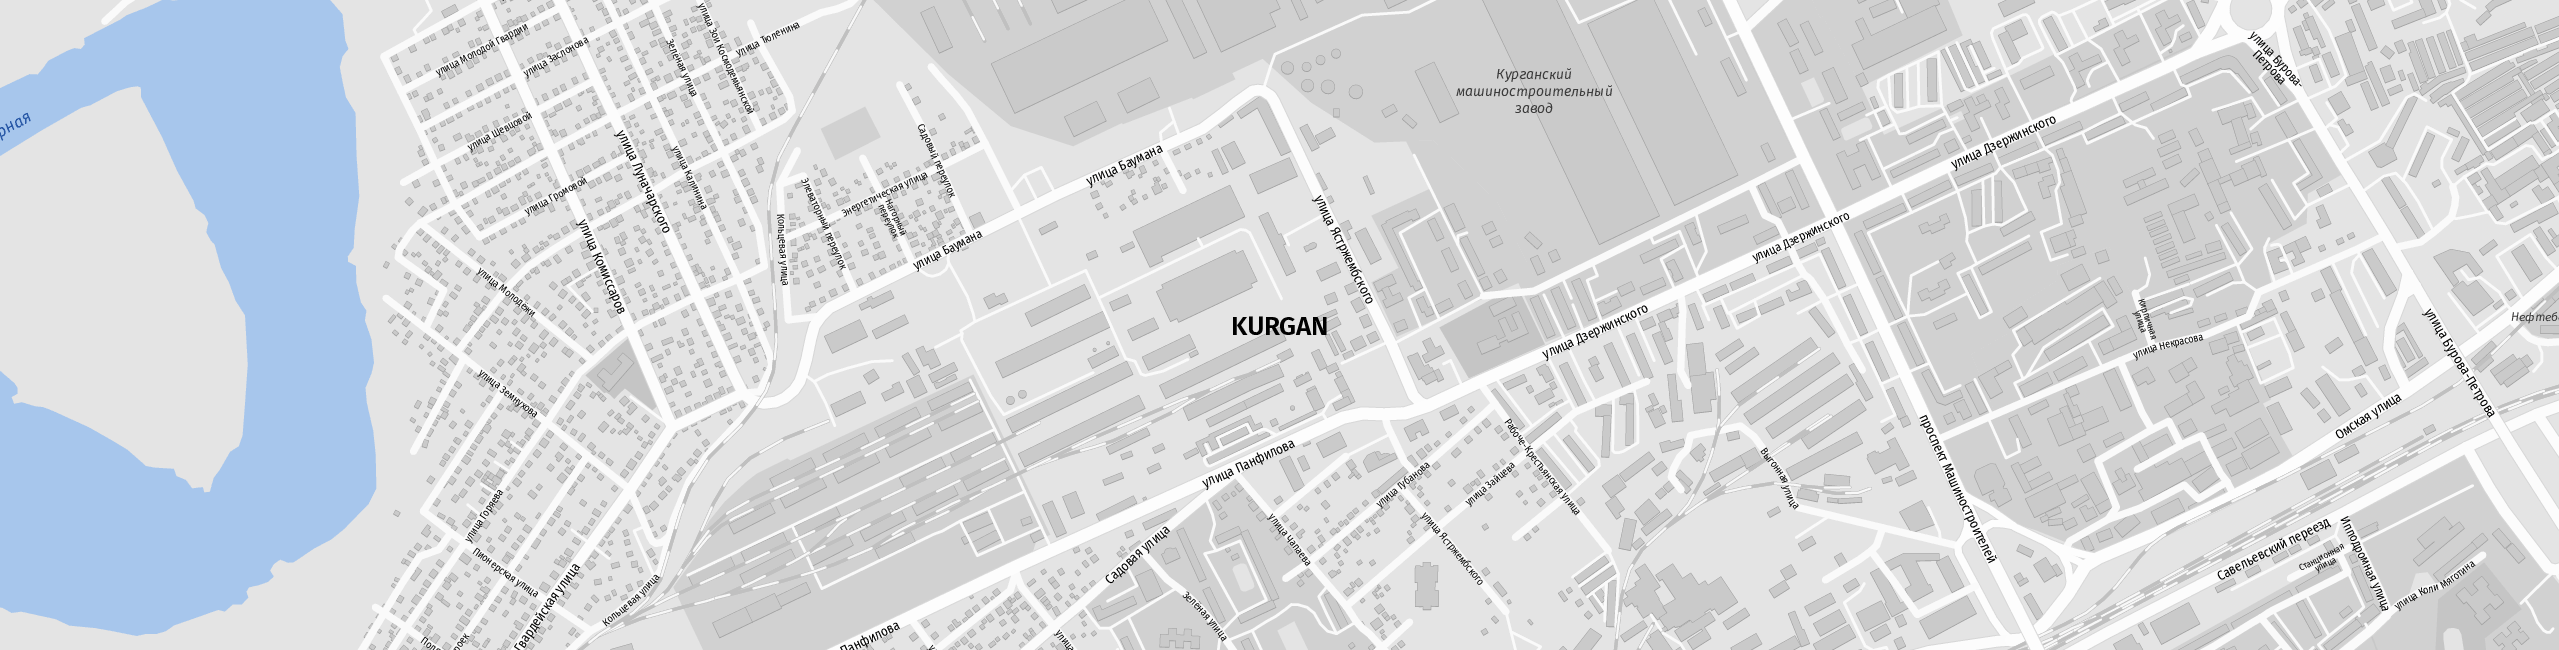 Stadtplan Kurgan zum Downloaden.